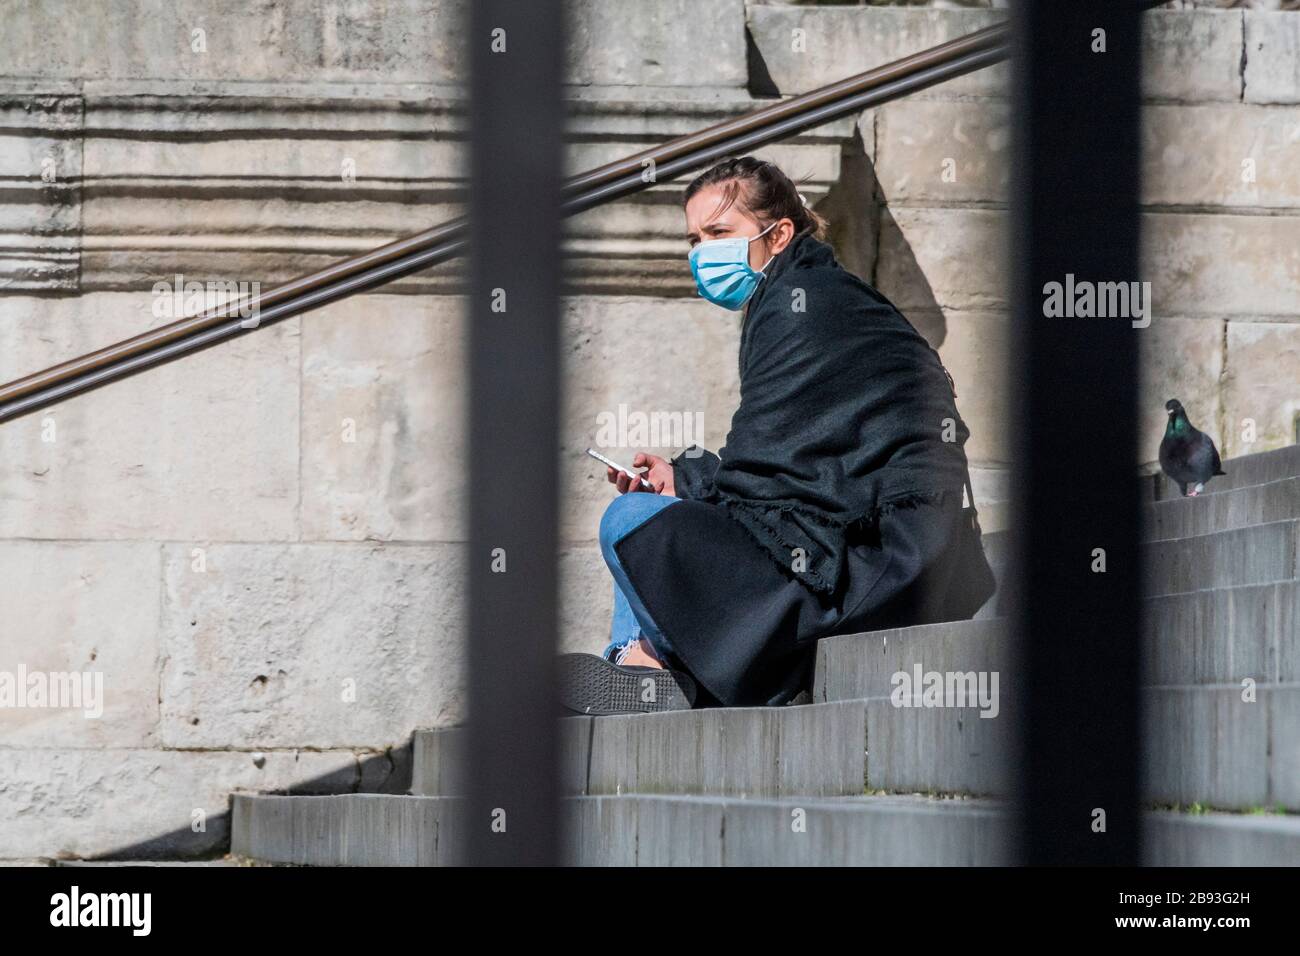 Londres, Reino Unido. 23 Mar 2020. No hay bloqueo hasta ahora - la Catedral de San Pablo está cerrada, pero algunas personas todavía disfrutan del sol en las escaleras - Anti Coronavirus (Covid 19) brote en Londres. Crédito: Guy Bell/Alamy Live News Foto de stock